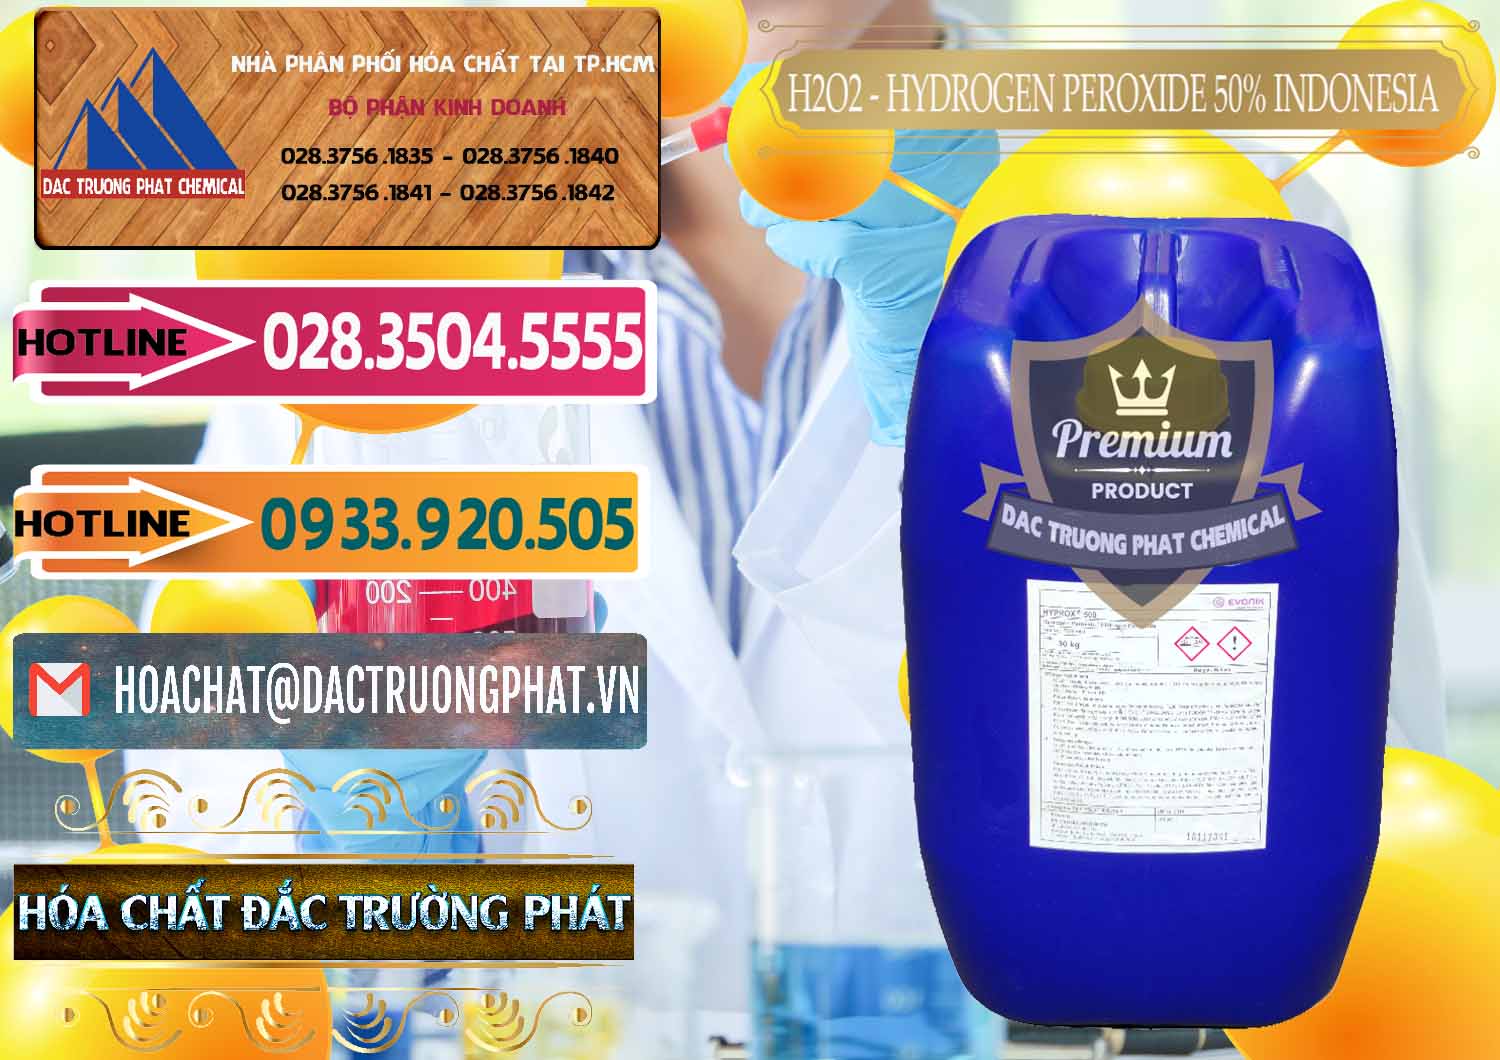 Cty nhập khẩu và bán H2O2 - Hydrogen Peroxide 50% Evonik Indonesia - 0070 - Phân phối _ kinh doanh hóa chất tại TP.HCM - dactruongphat.vn